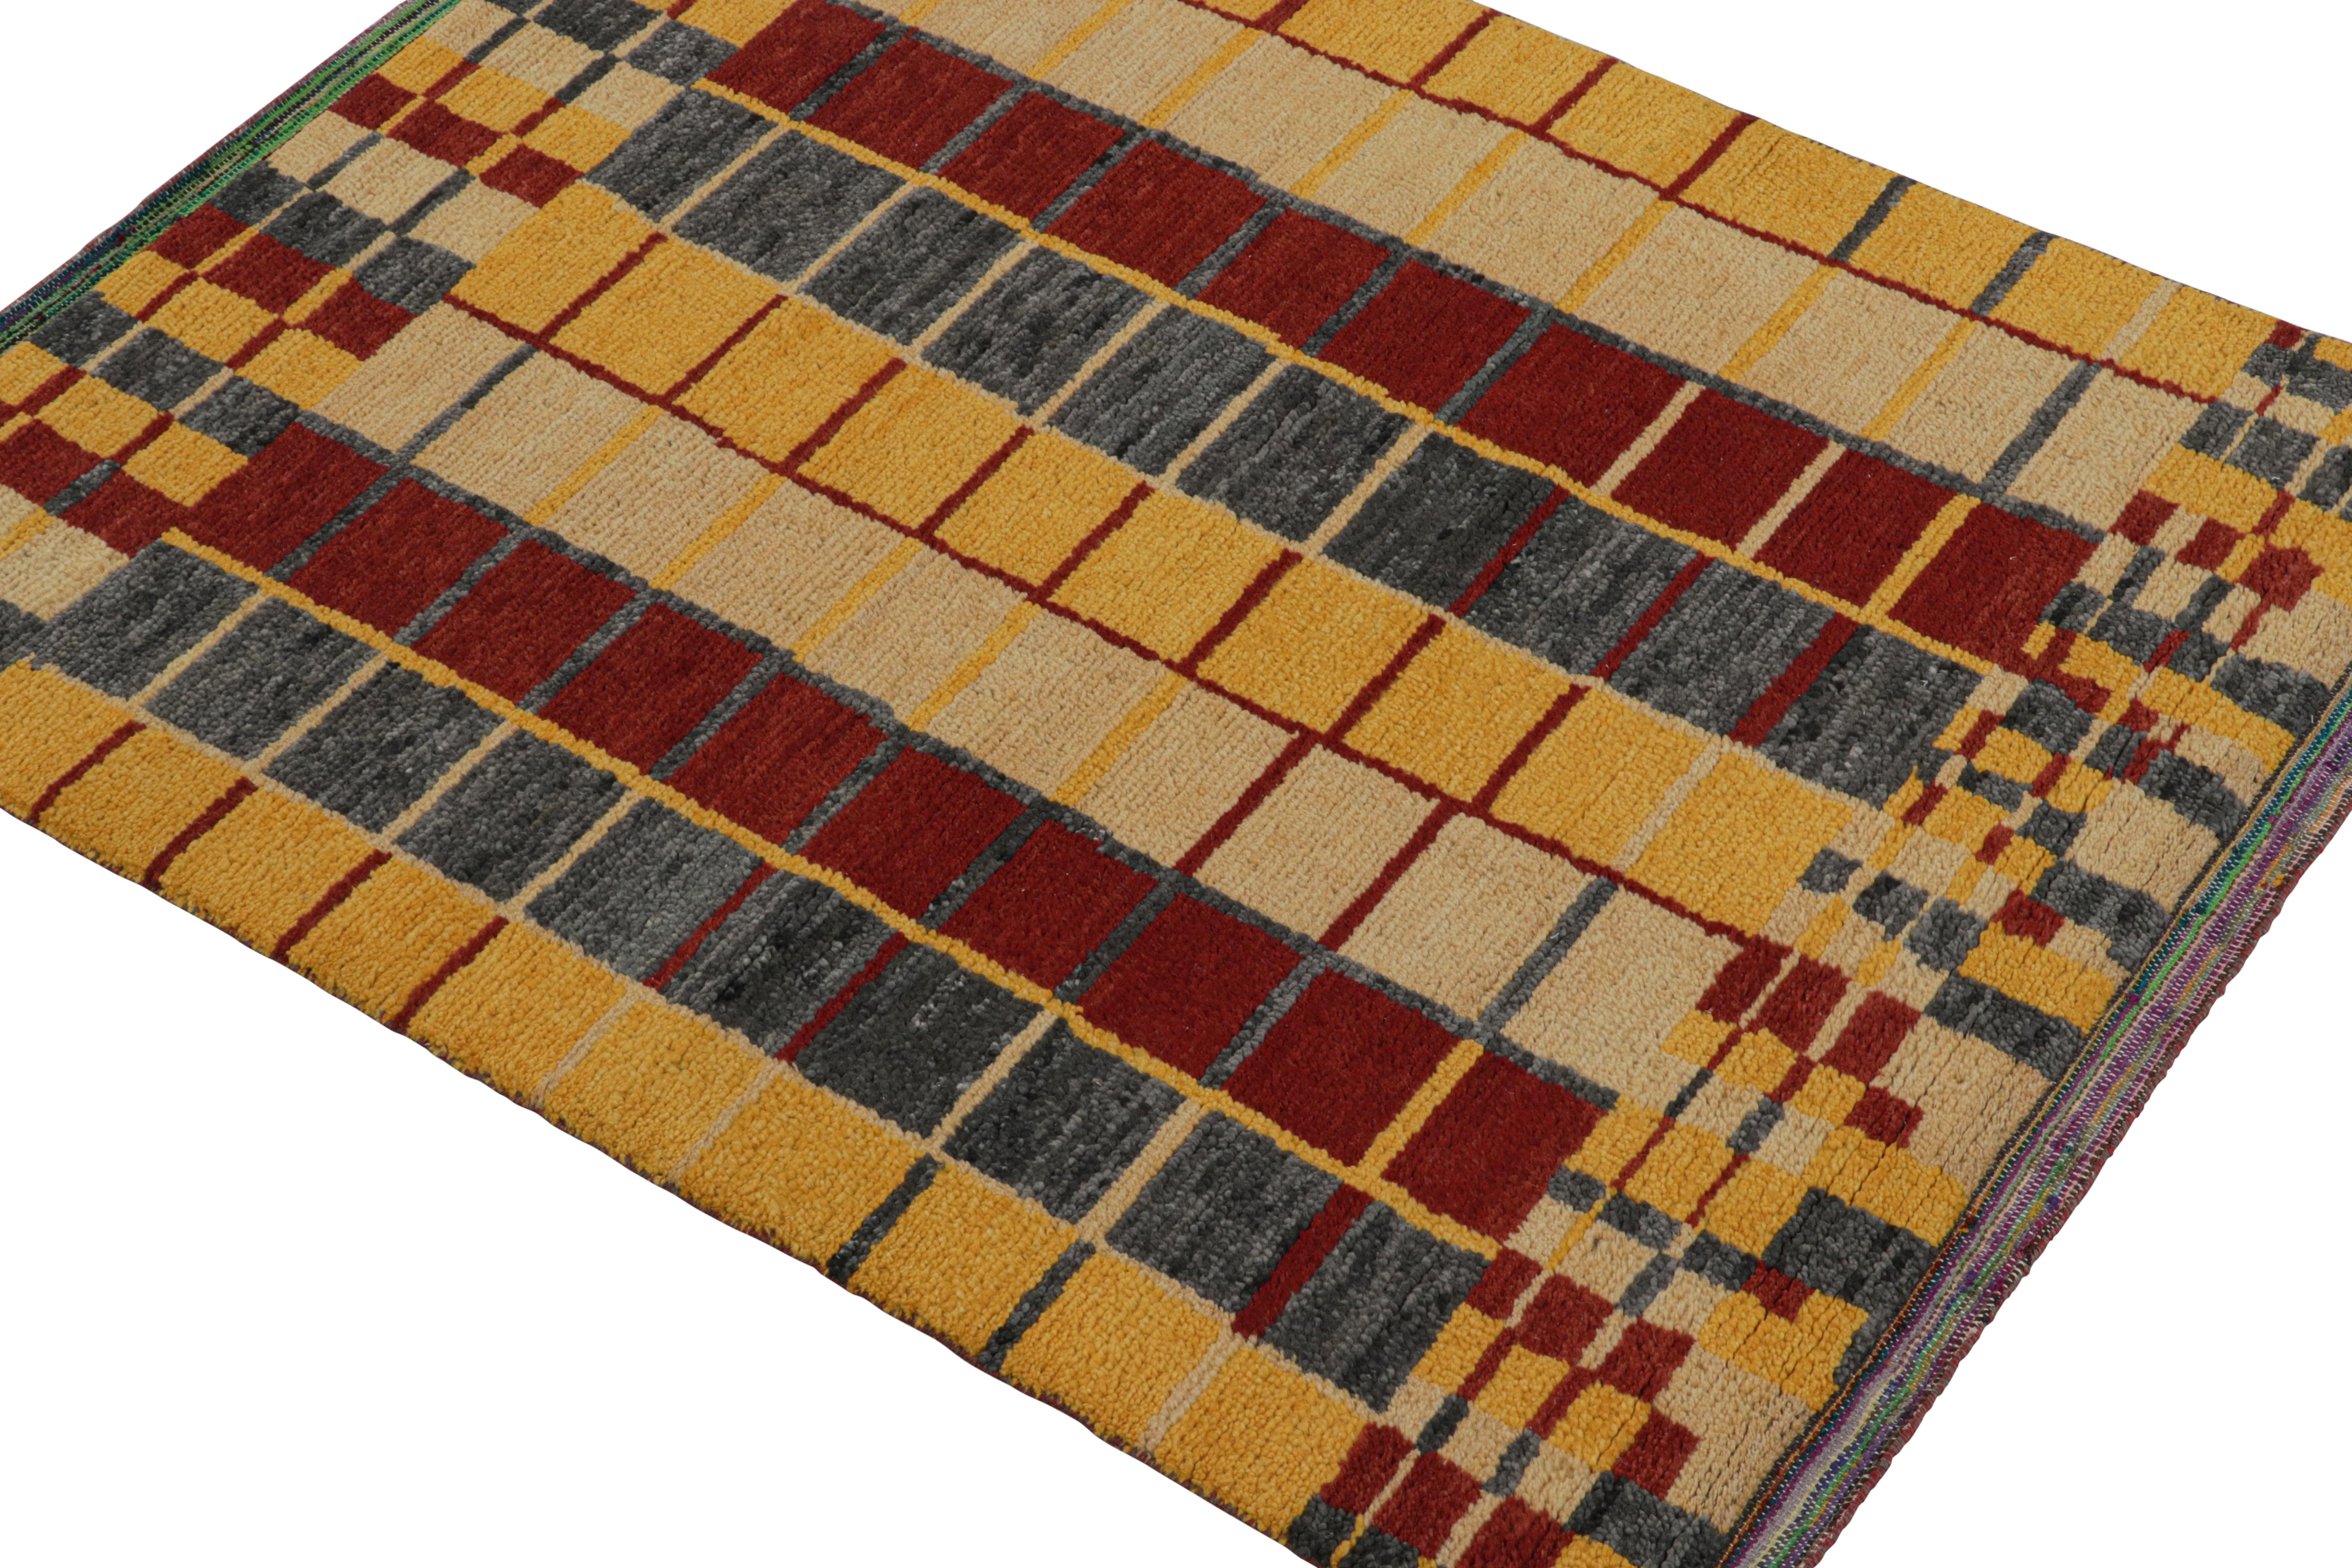 Ce tapis contemporain de 5 x 6 cm est le dernier né de la nouvelle collection marocaine de Rug & Kilim, une version audacieuse de ce style emblématique. Noué à la main dans un mélange de laine, de soie et de coton.
Plus loin dans la conception